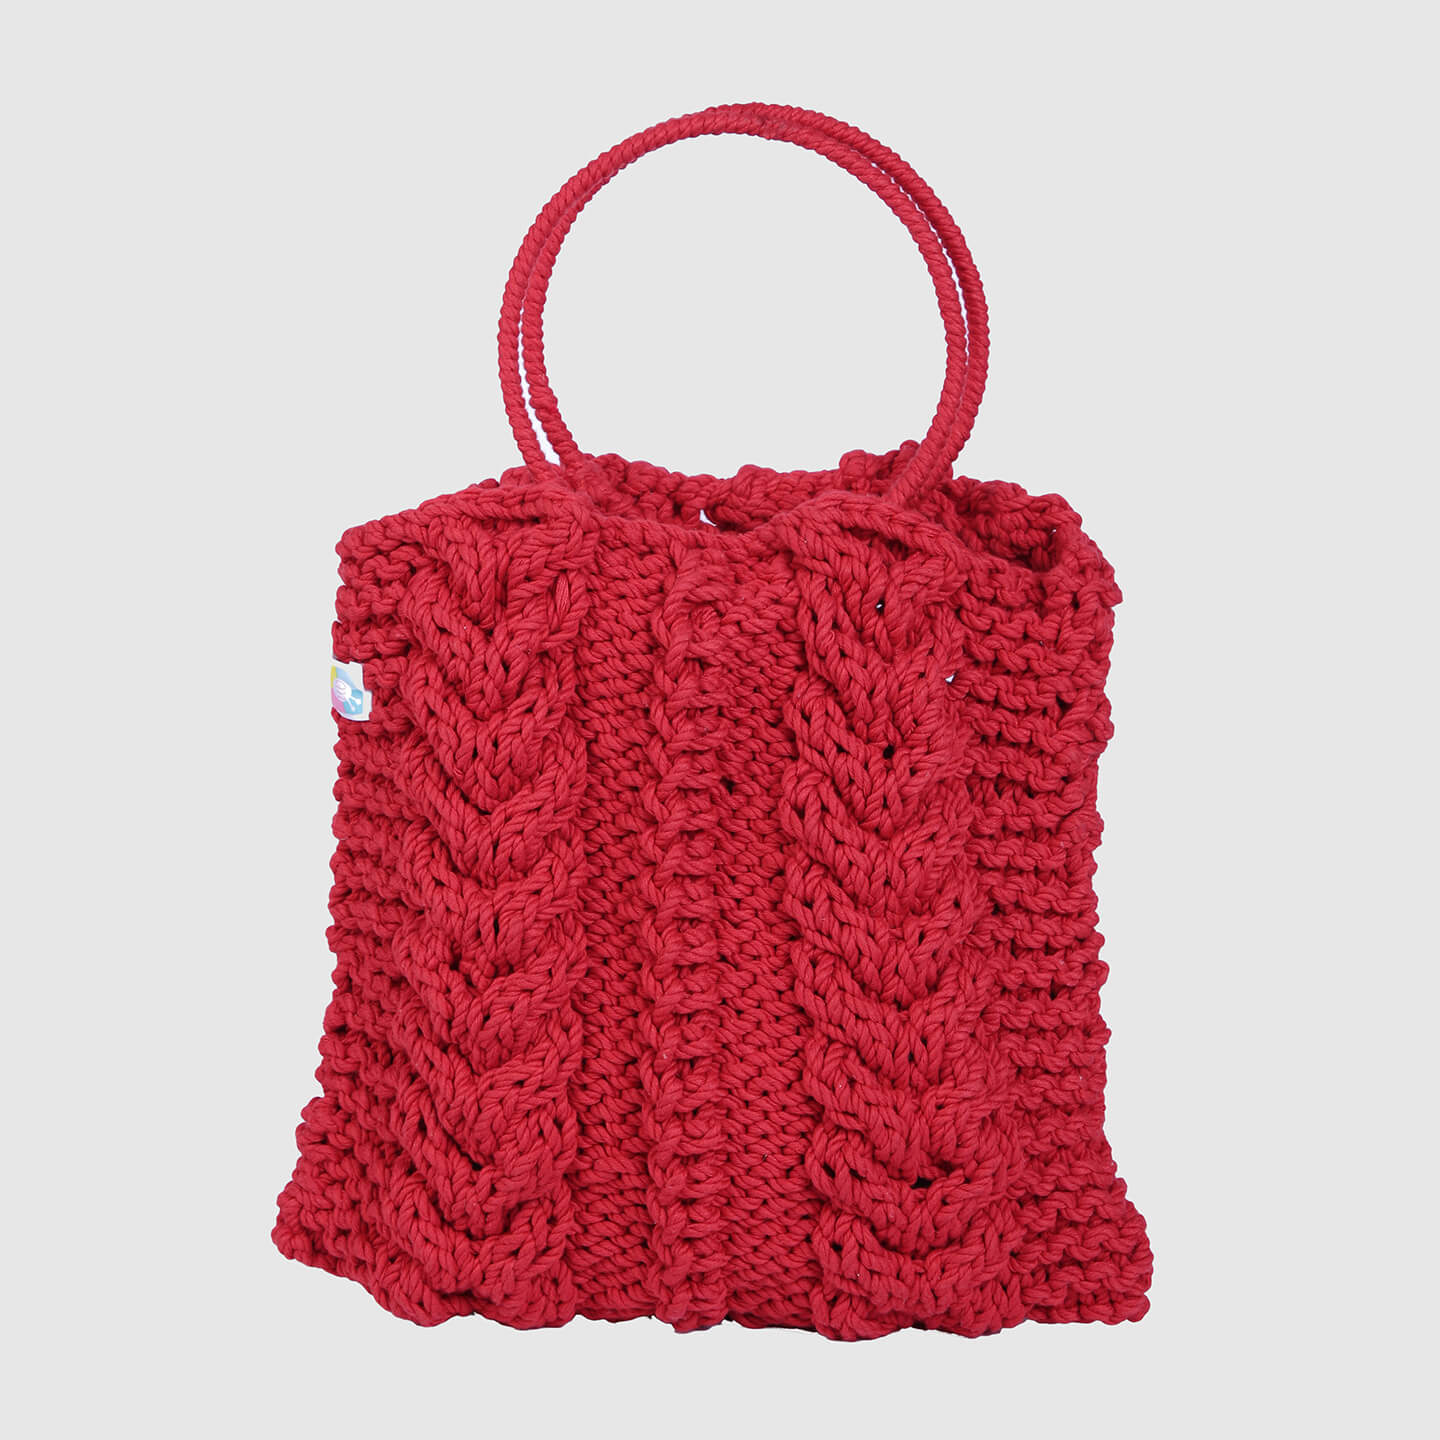 Handmade Crochet Bag - Red 3128